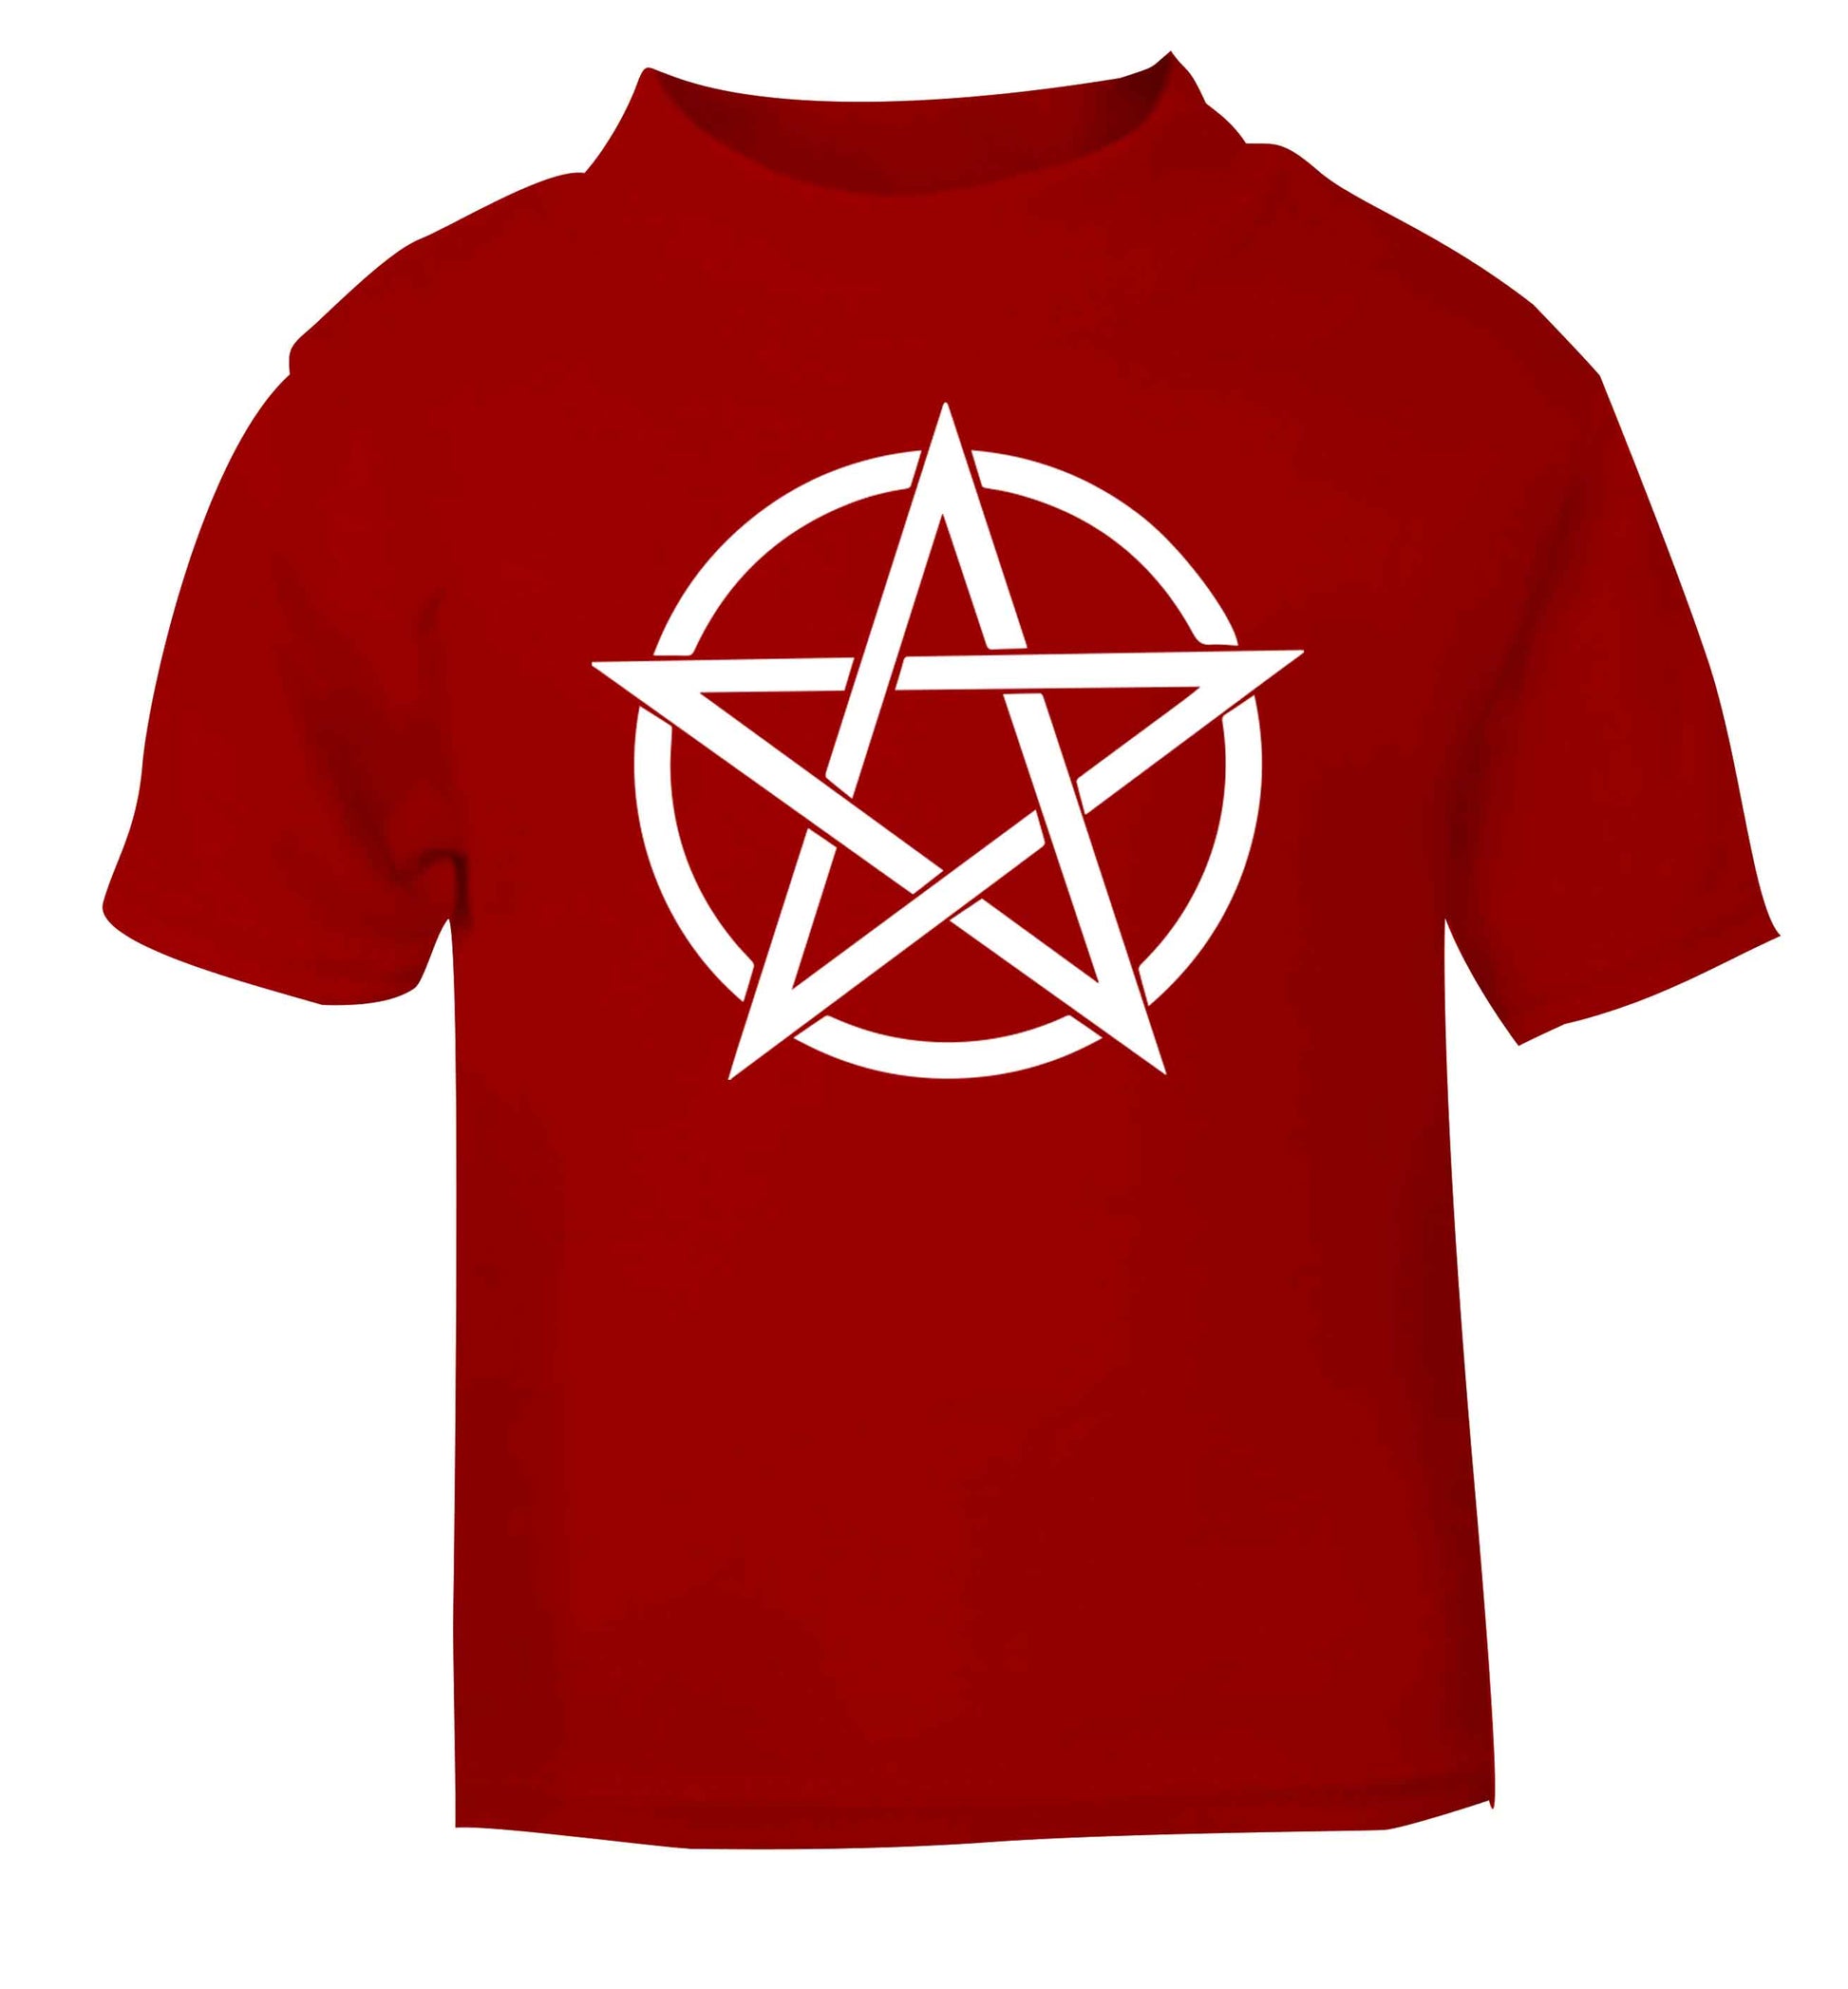 Pentagram symbol red baby toddler Tshirt 2 Years